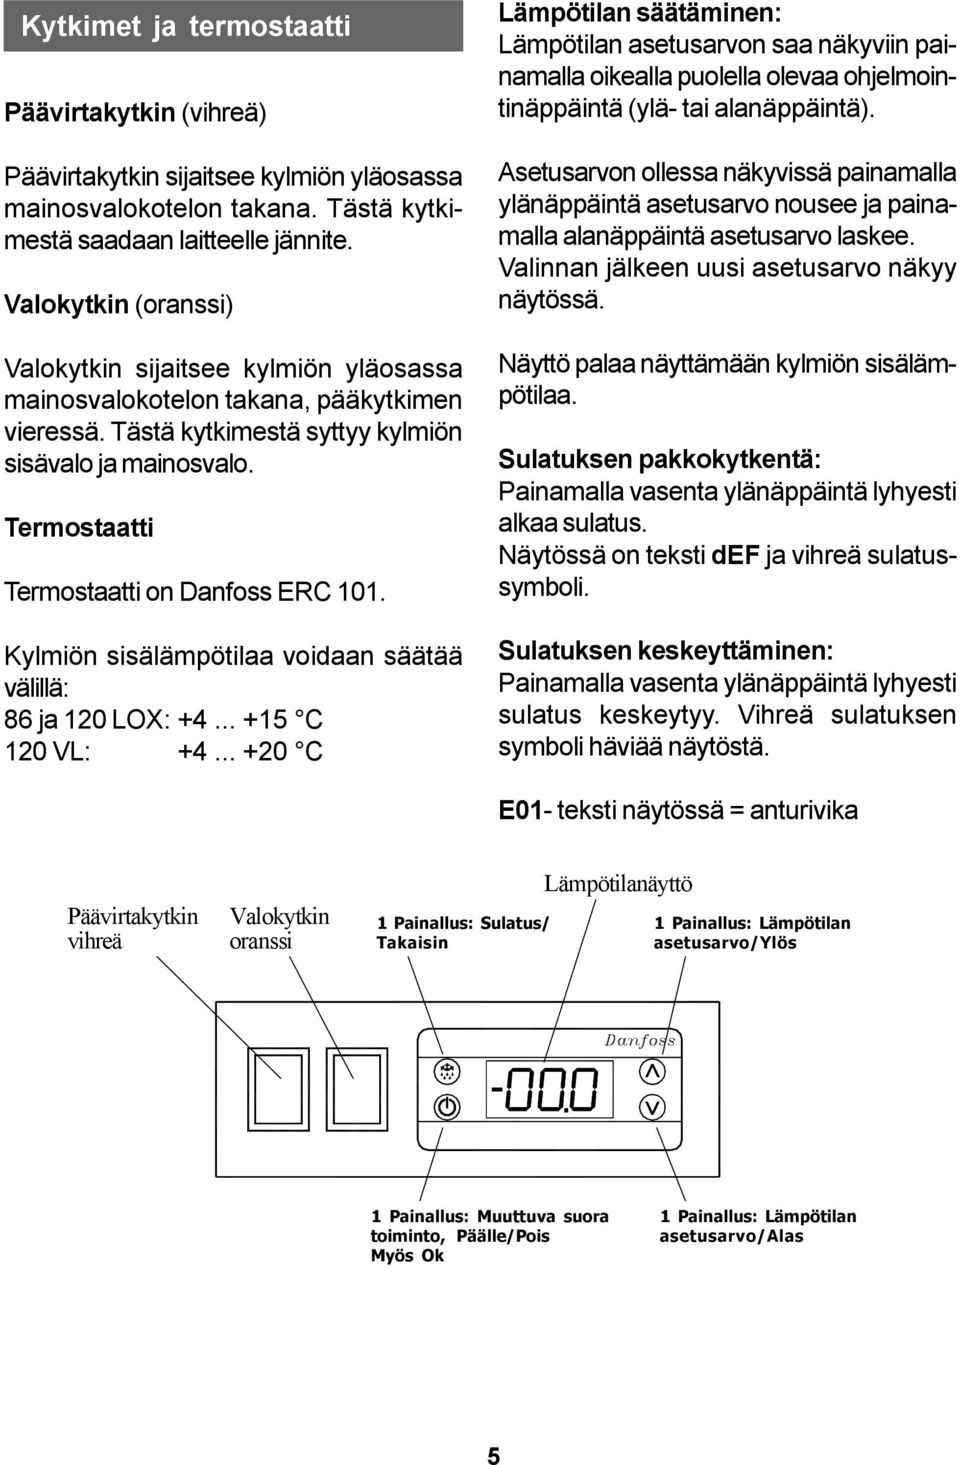 Termostaatti Termostaatti on Danfoss ERC 101. Kylmiön sisälämpötilaa voidaan säätää välillä: 86 ja 120 LOX: +4... +15 C 120 VL: +4.